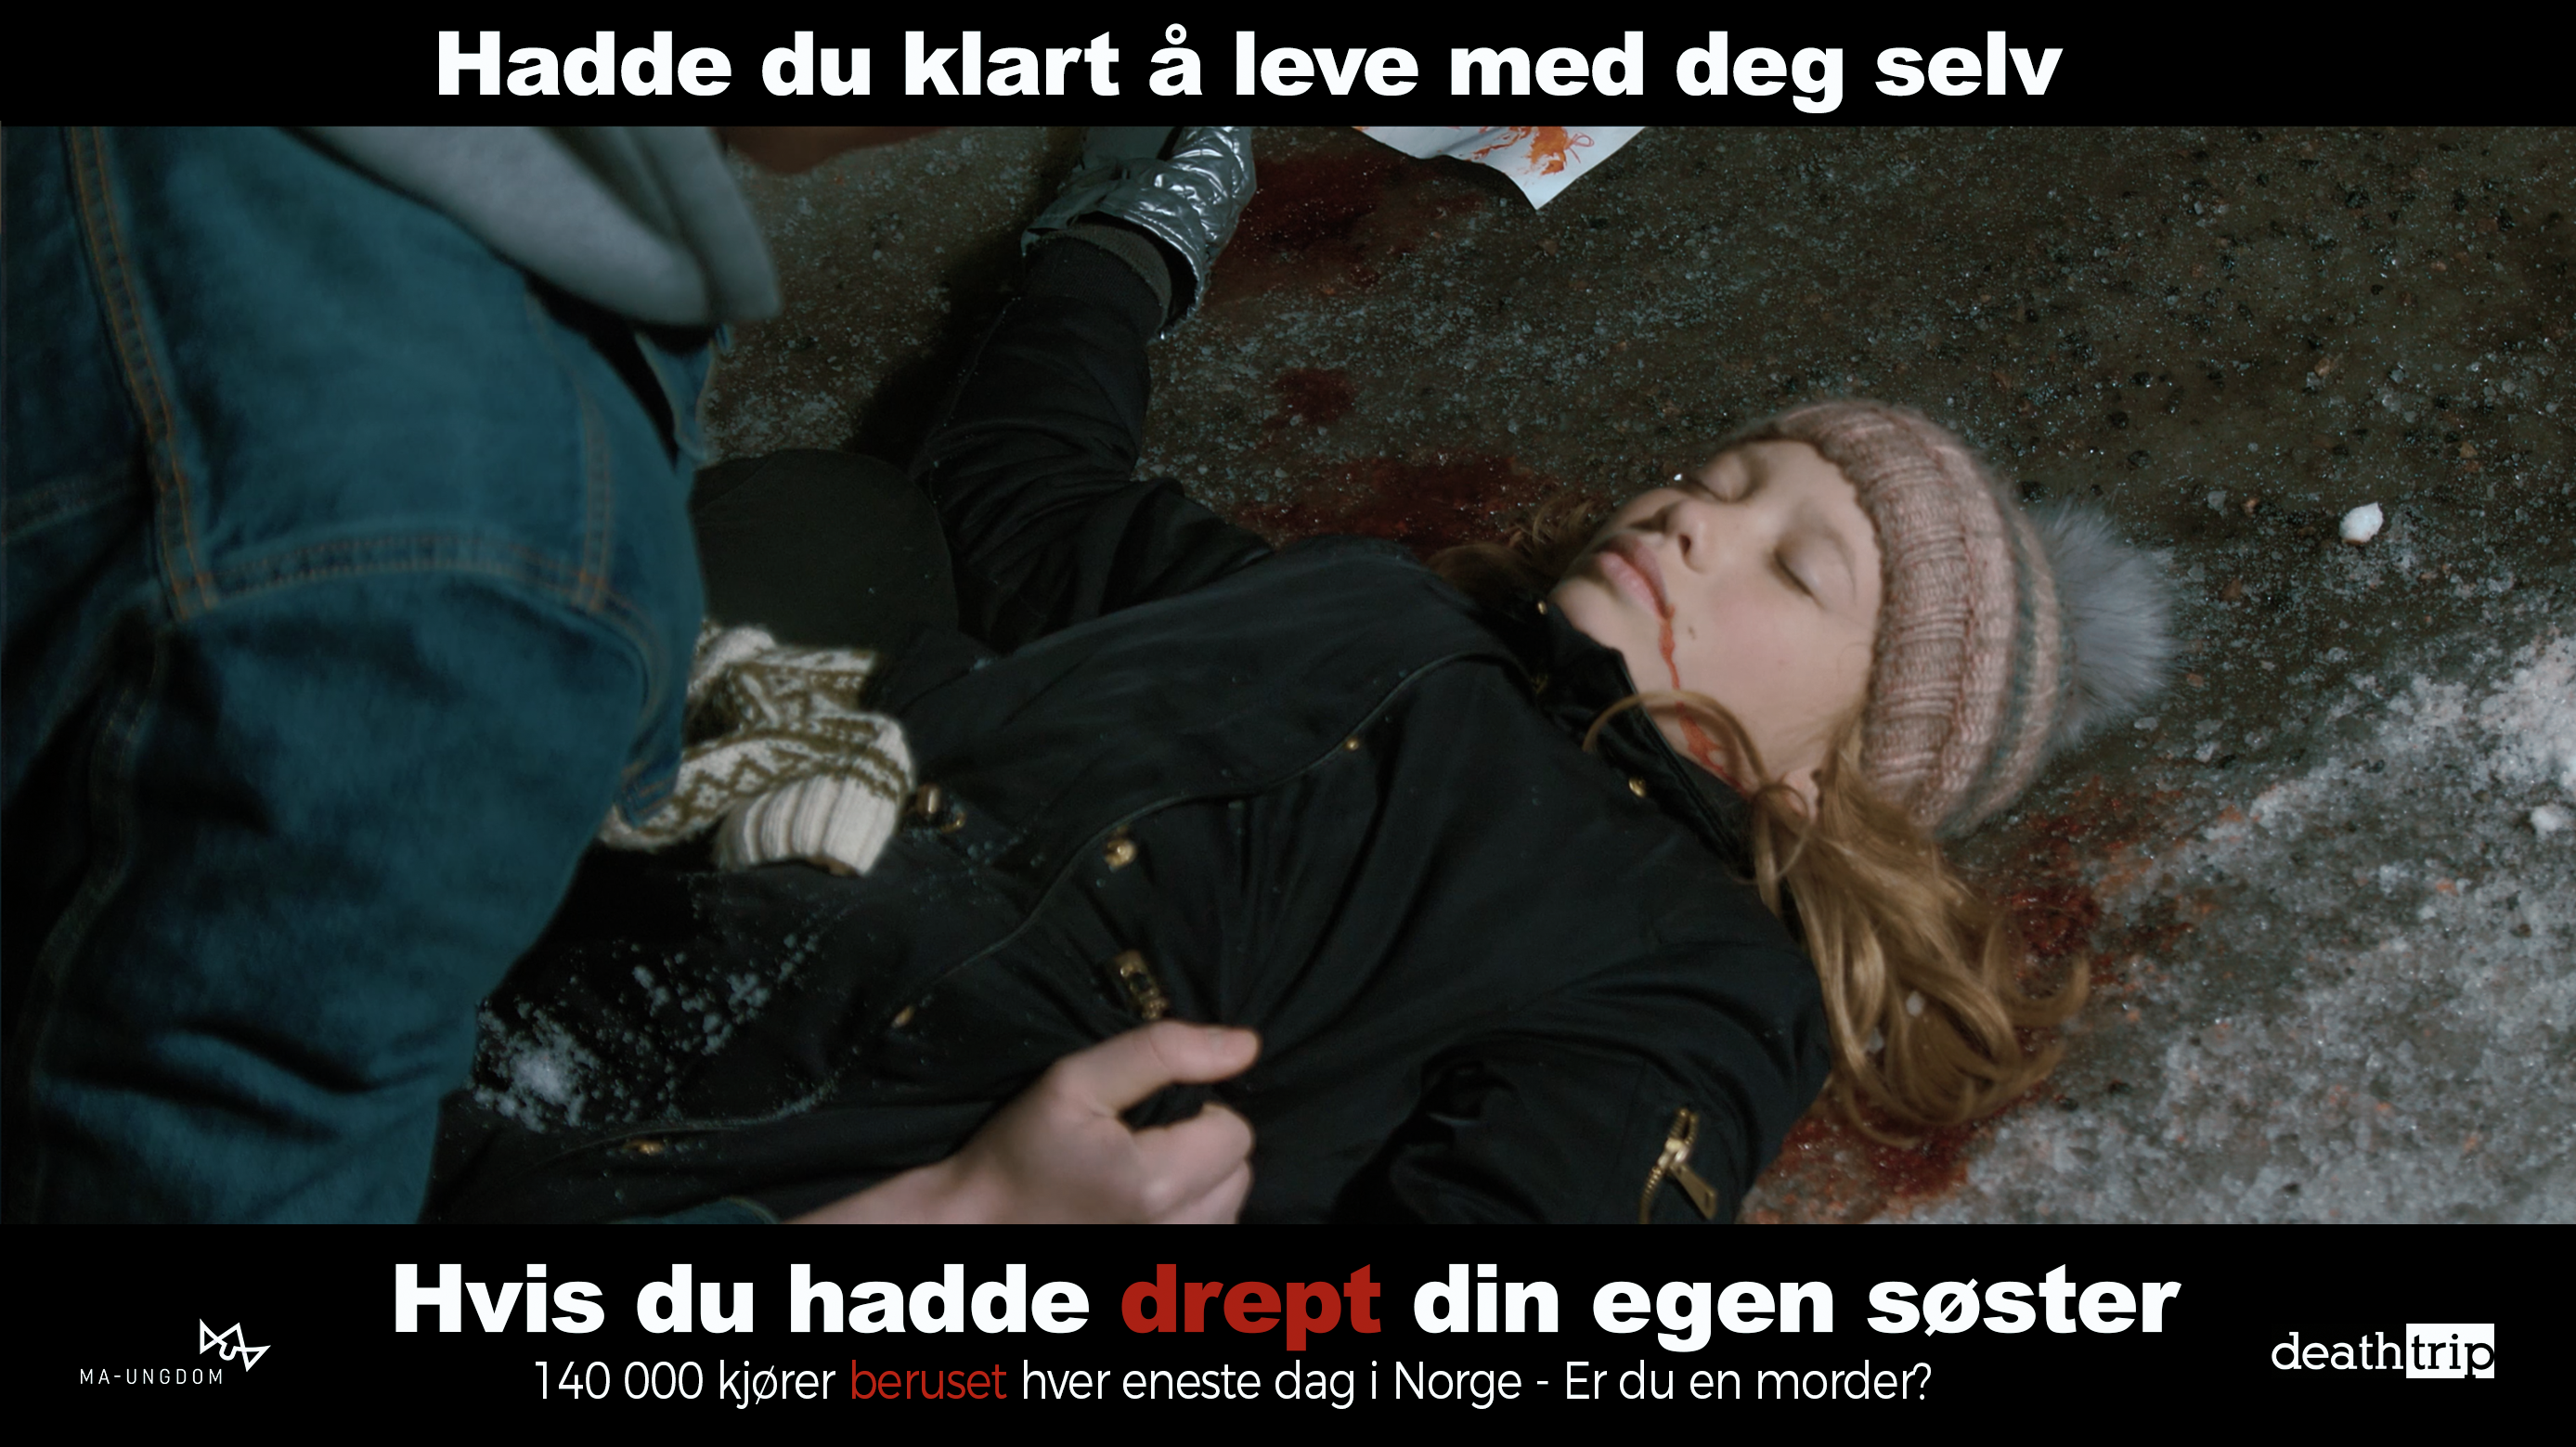 Plakat med tekst: Hadde du klart å leve med deg selv hvis du hadde drept din egen søster?